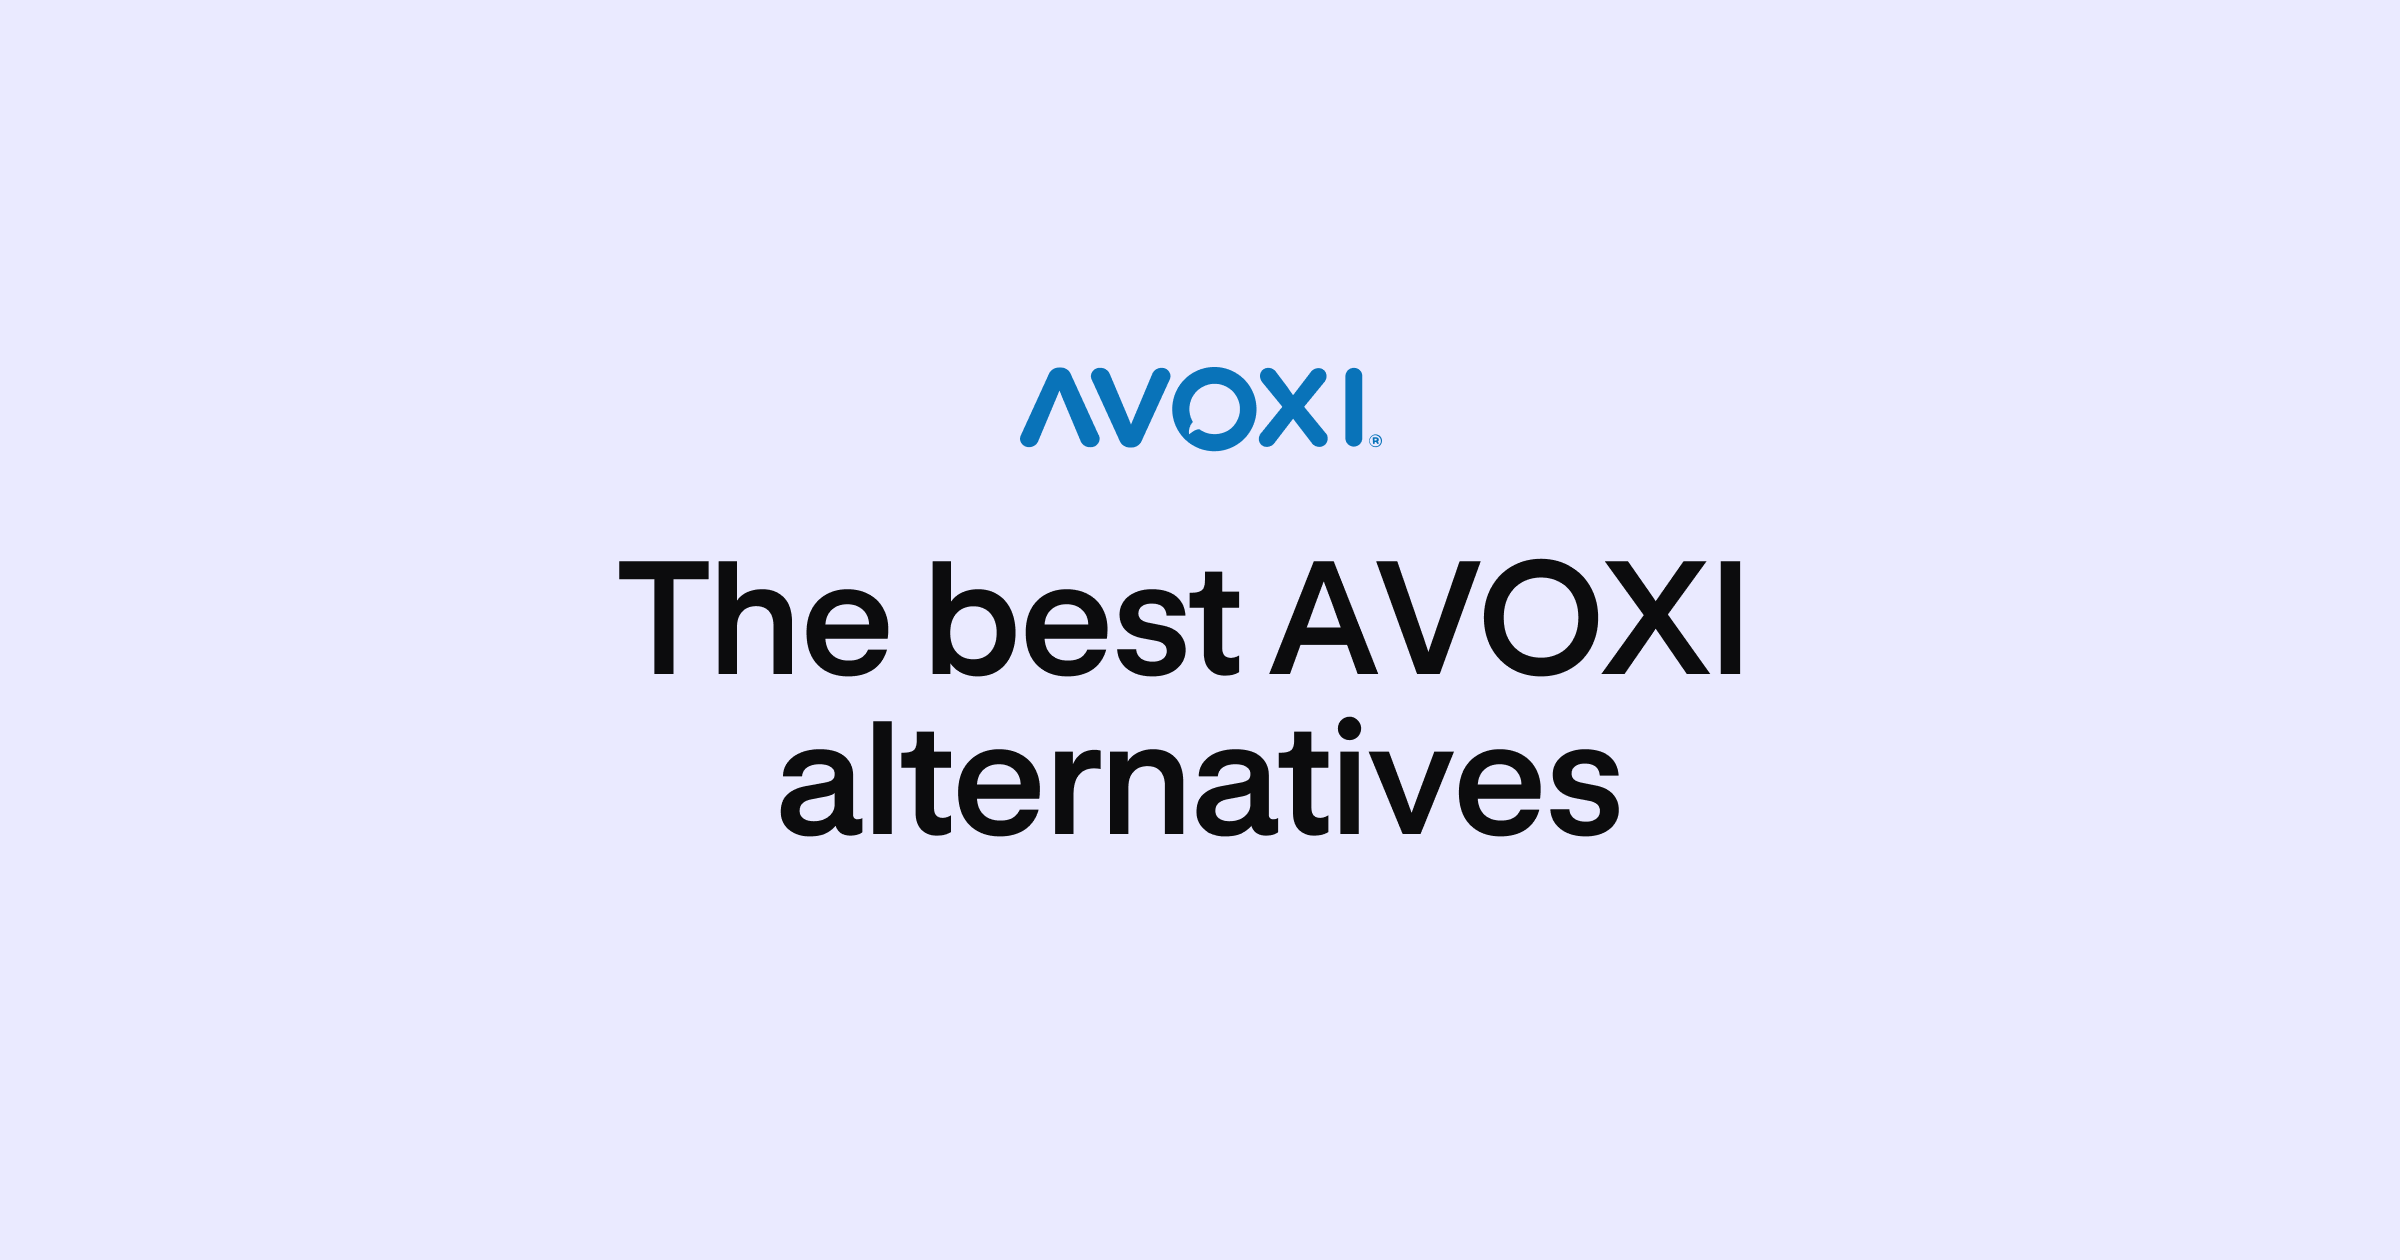 AVOXI alternatives